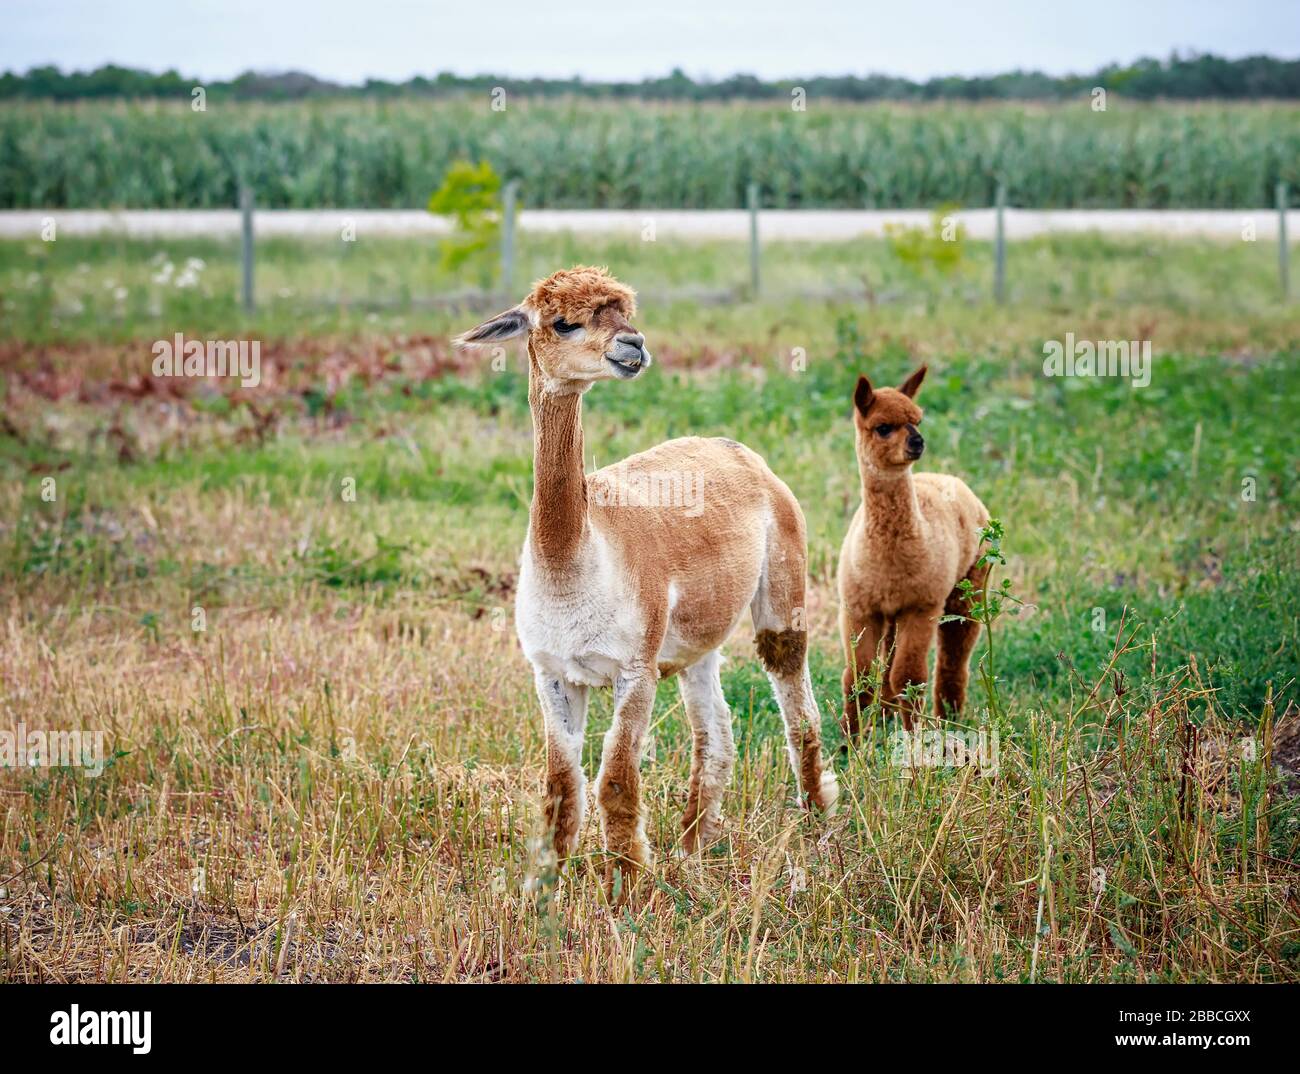 Un adulte récemment cisaillé Alpaga et un bébé non cisaillé Alpaga dans un champ agricole, Manitoba, Canada. Banque D'Images